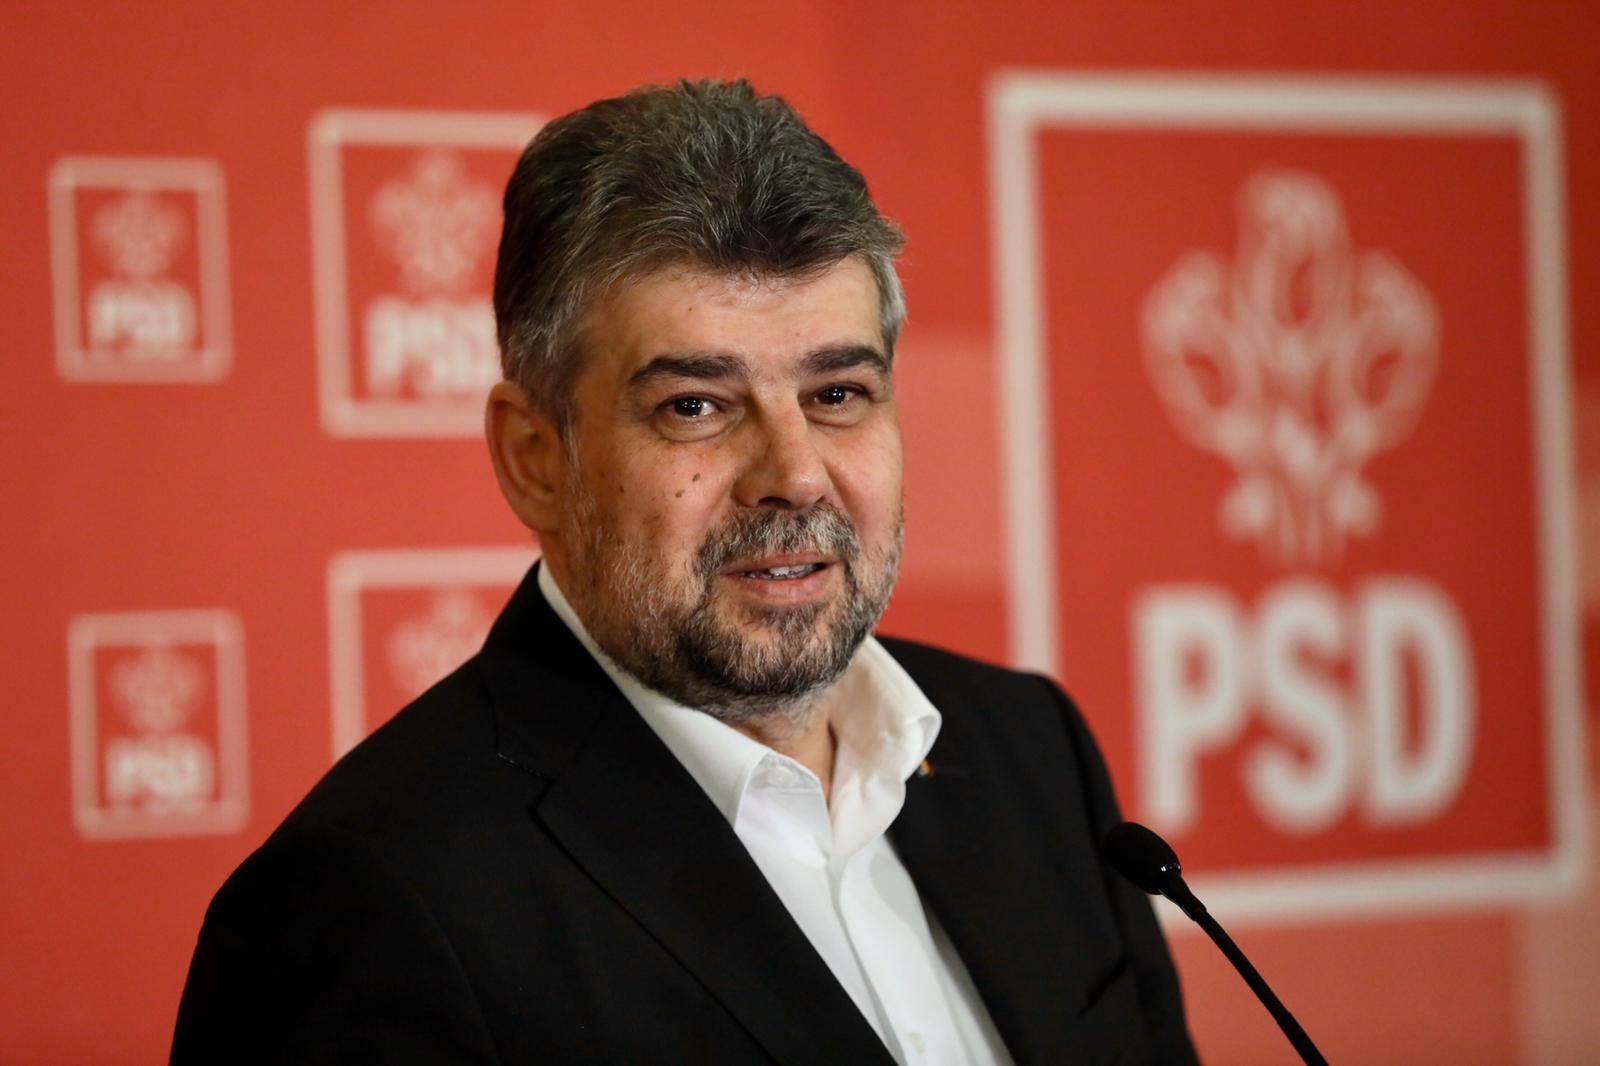  Candidatul PSD la președinție va fi un intelectual de stânga, care nu e membru de partid. Declarația surprinzătoare a lui Ciolacu